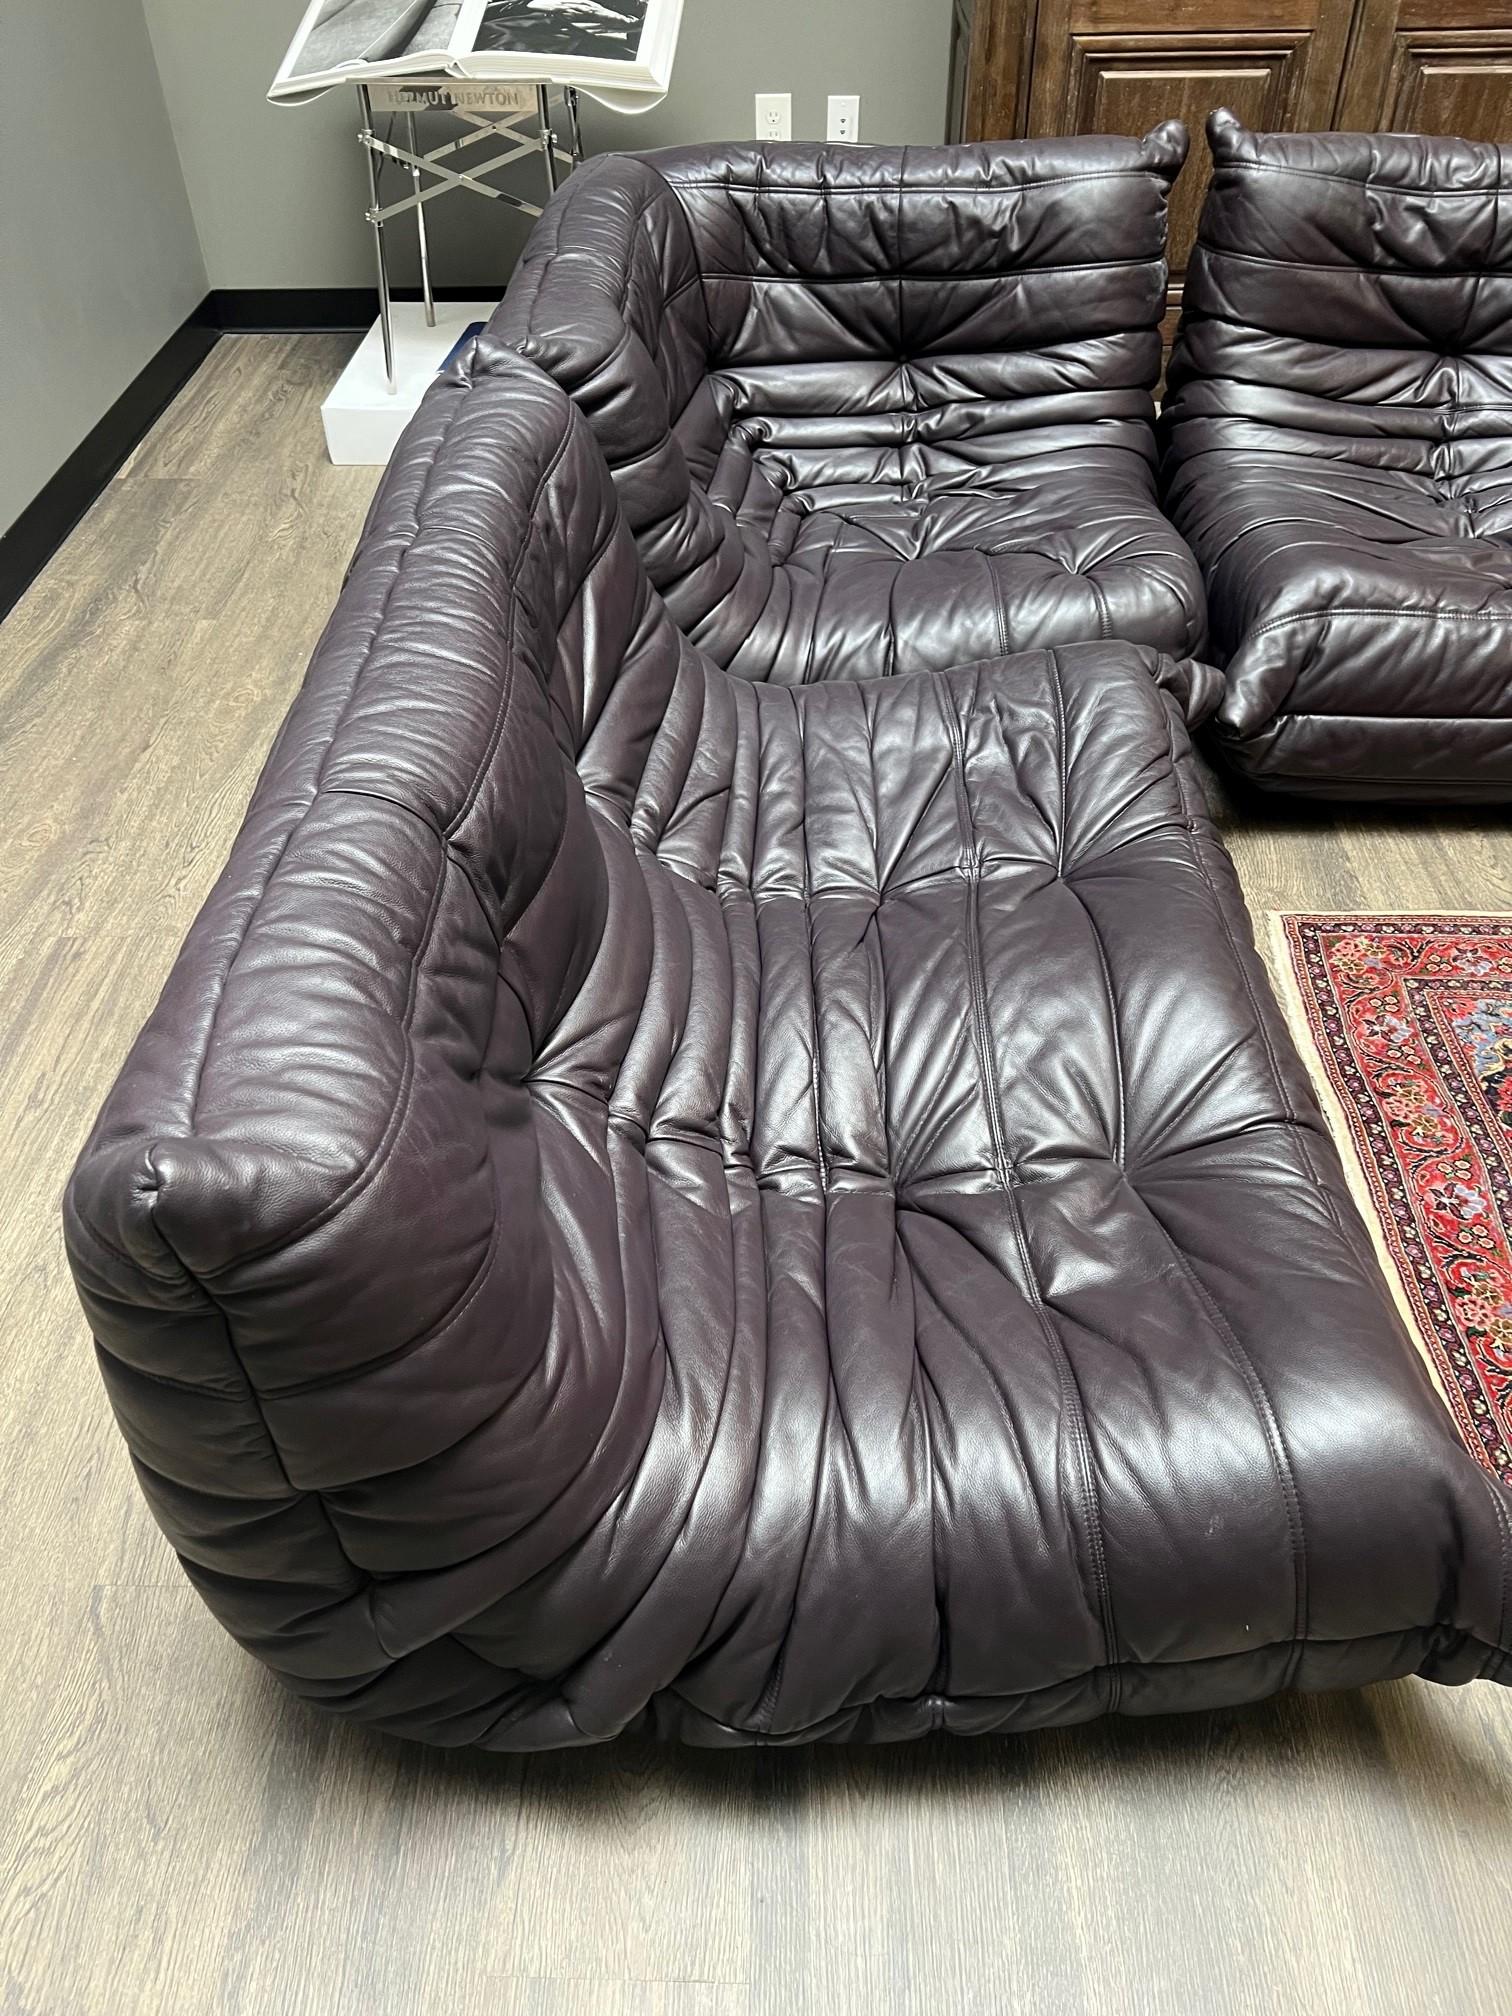 Ce merveilleux canapé sectionnel 'Togo' de Michel Ducaroy pour Ligne Roset est d'une couleur prune riche et profonde.

Ce modèle particulier est un canapé sectionnel 